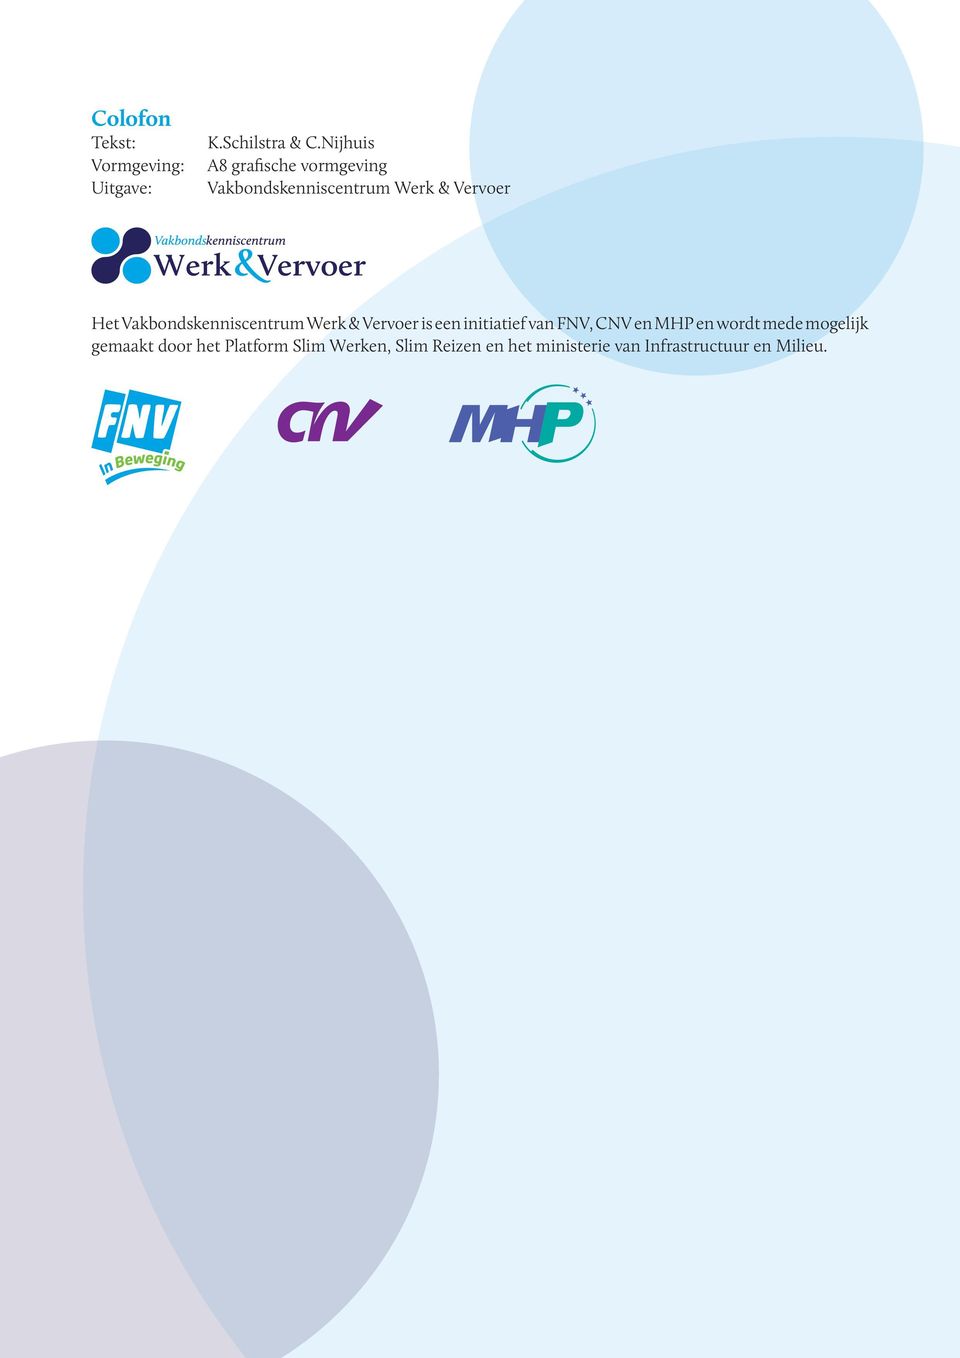 Vakbondskenniscentrum Werk & Vervoer is een initiatief van FNV, CNV en MHP en